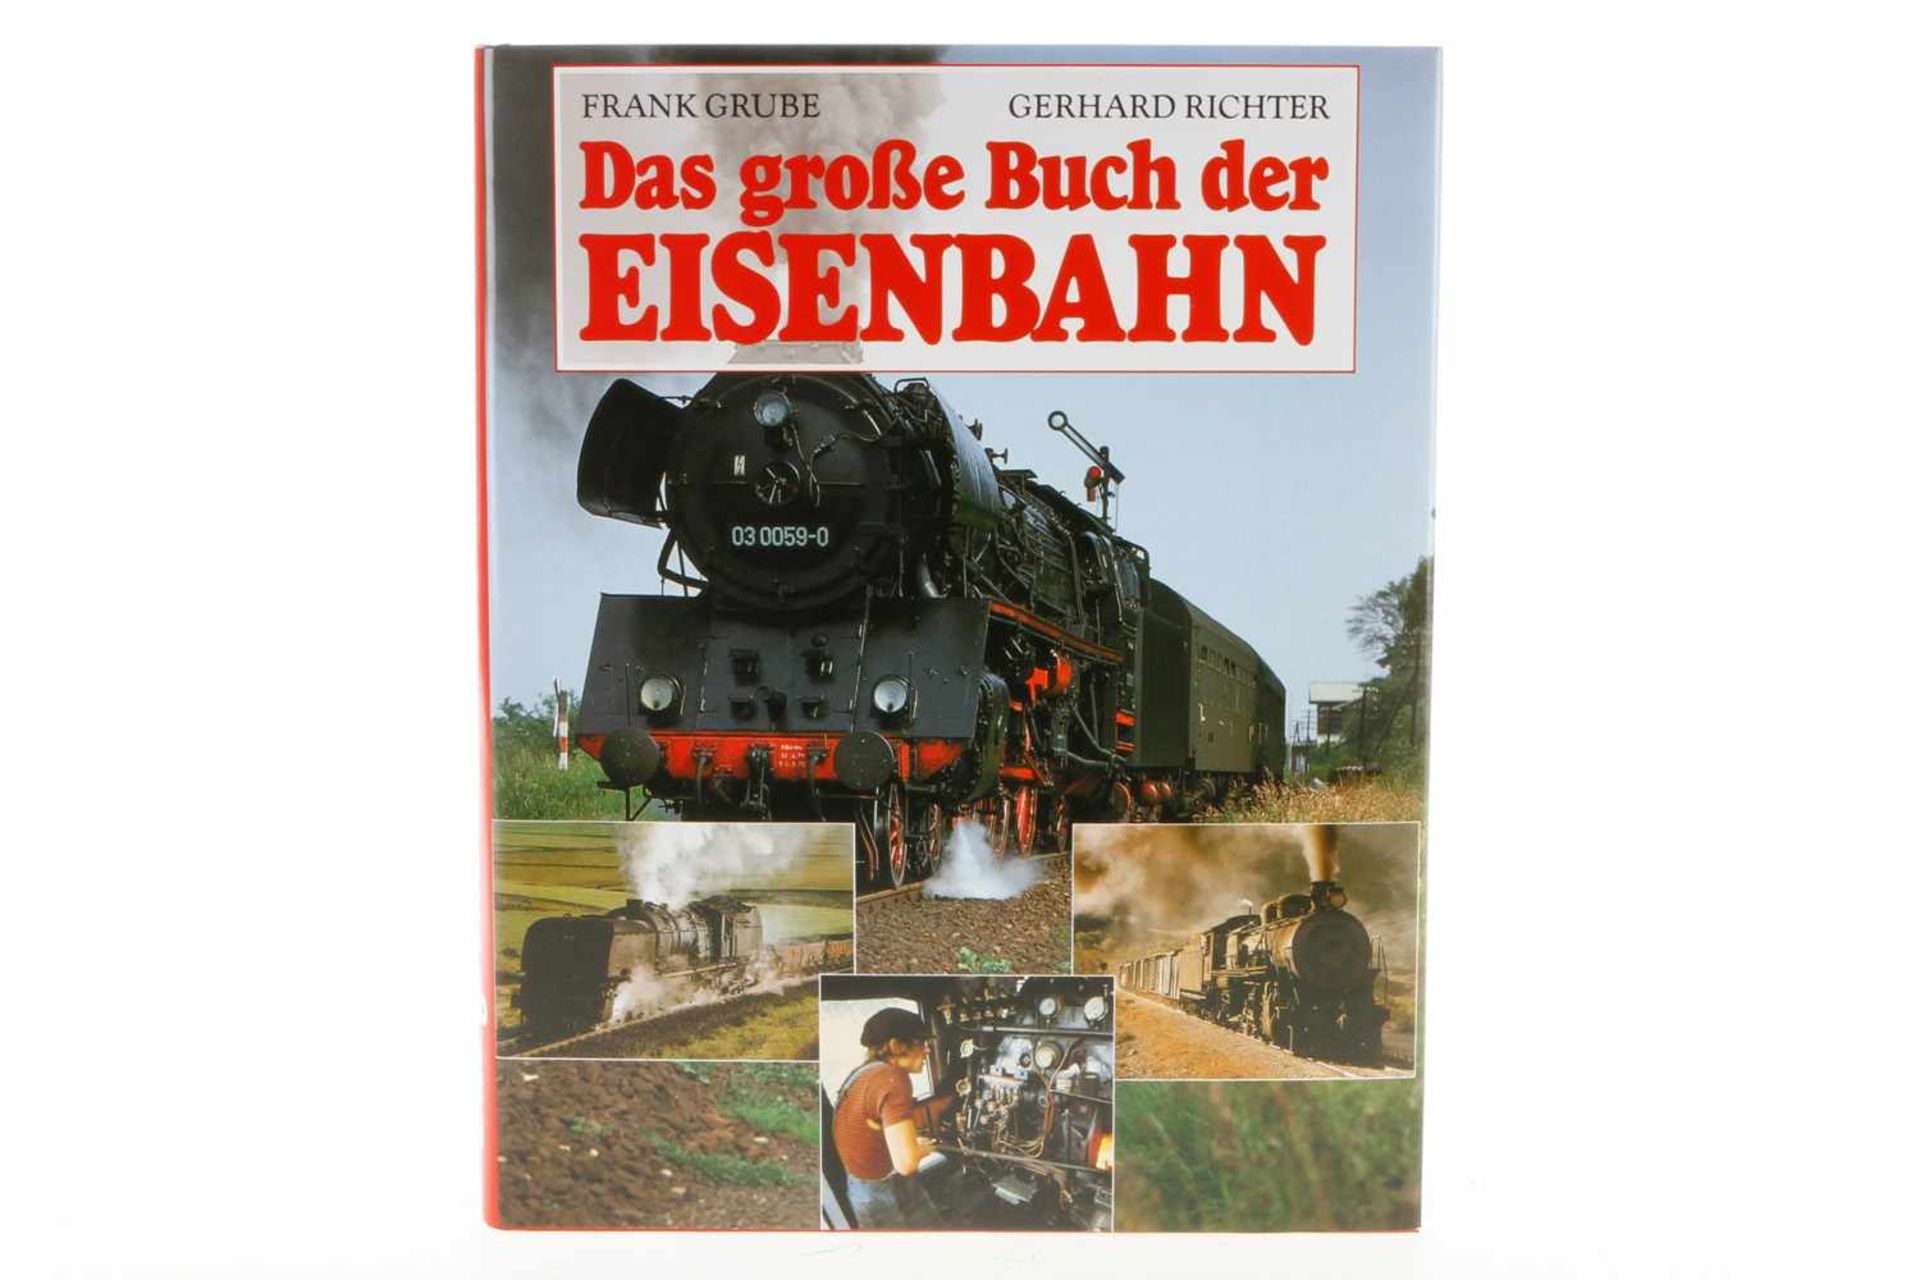 "Das große Buch der Eisenbahn", 1996, 312 Seiten, Alterungsspuren